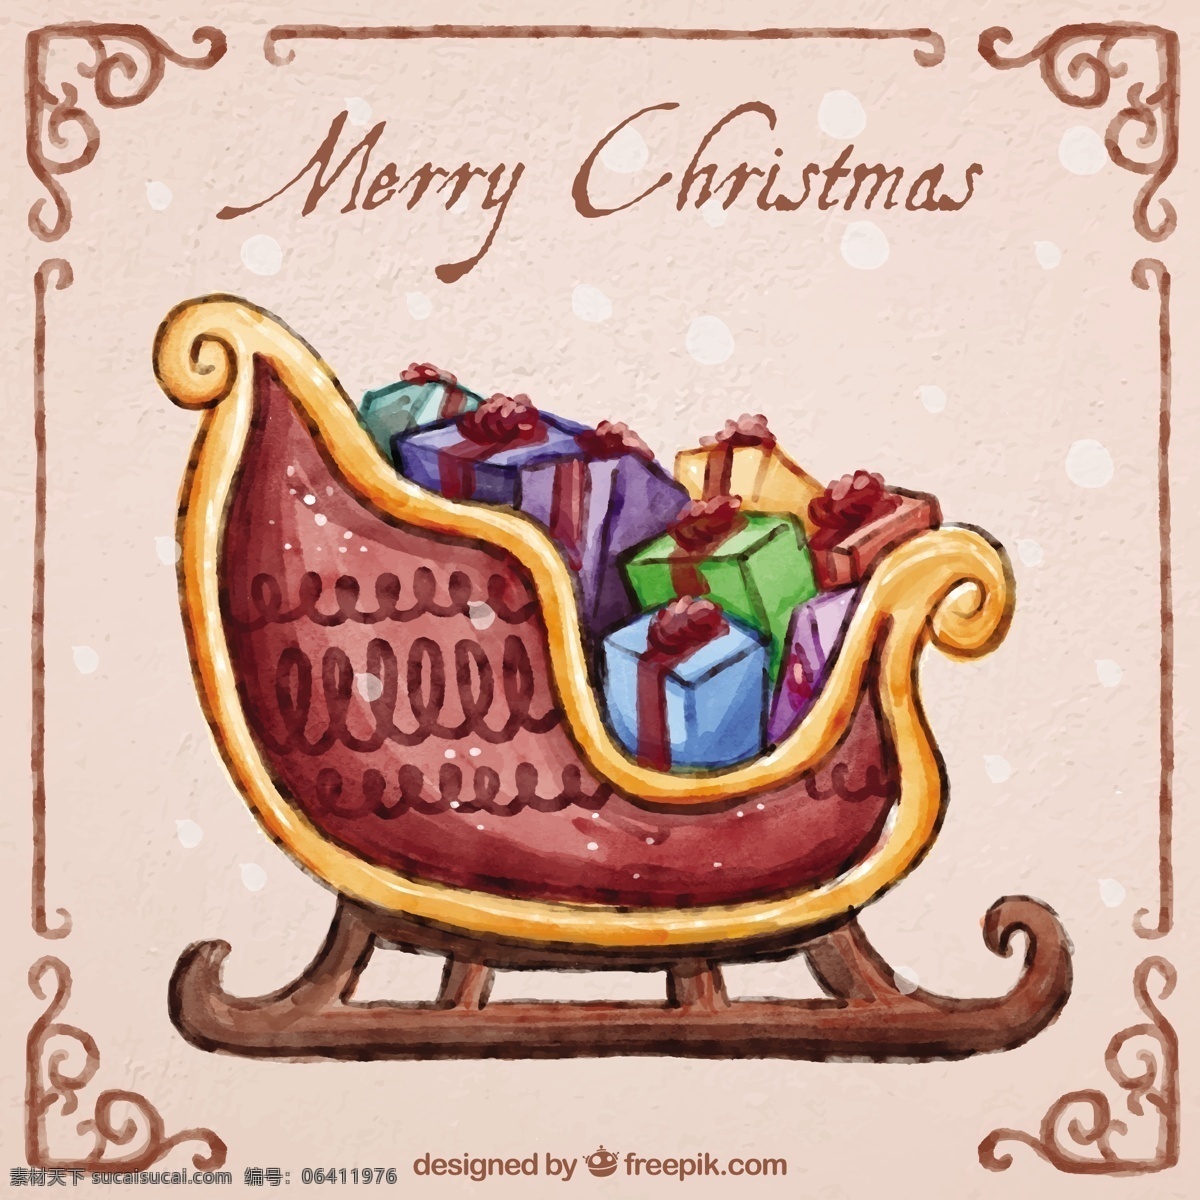 手绘圣诞雪橇 架 圣诞节 一方面 卡片 圣诞快乐 冬天快乐 圣诞卡 圣诞 庆祝 节日礼品卡 装饰 节日快乐 圣诞礼品 框架 提出了 雪橇 季节的问候 圣诞装饰 粉色